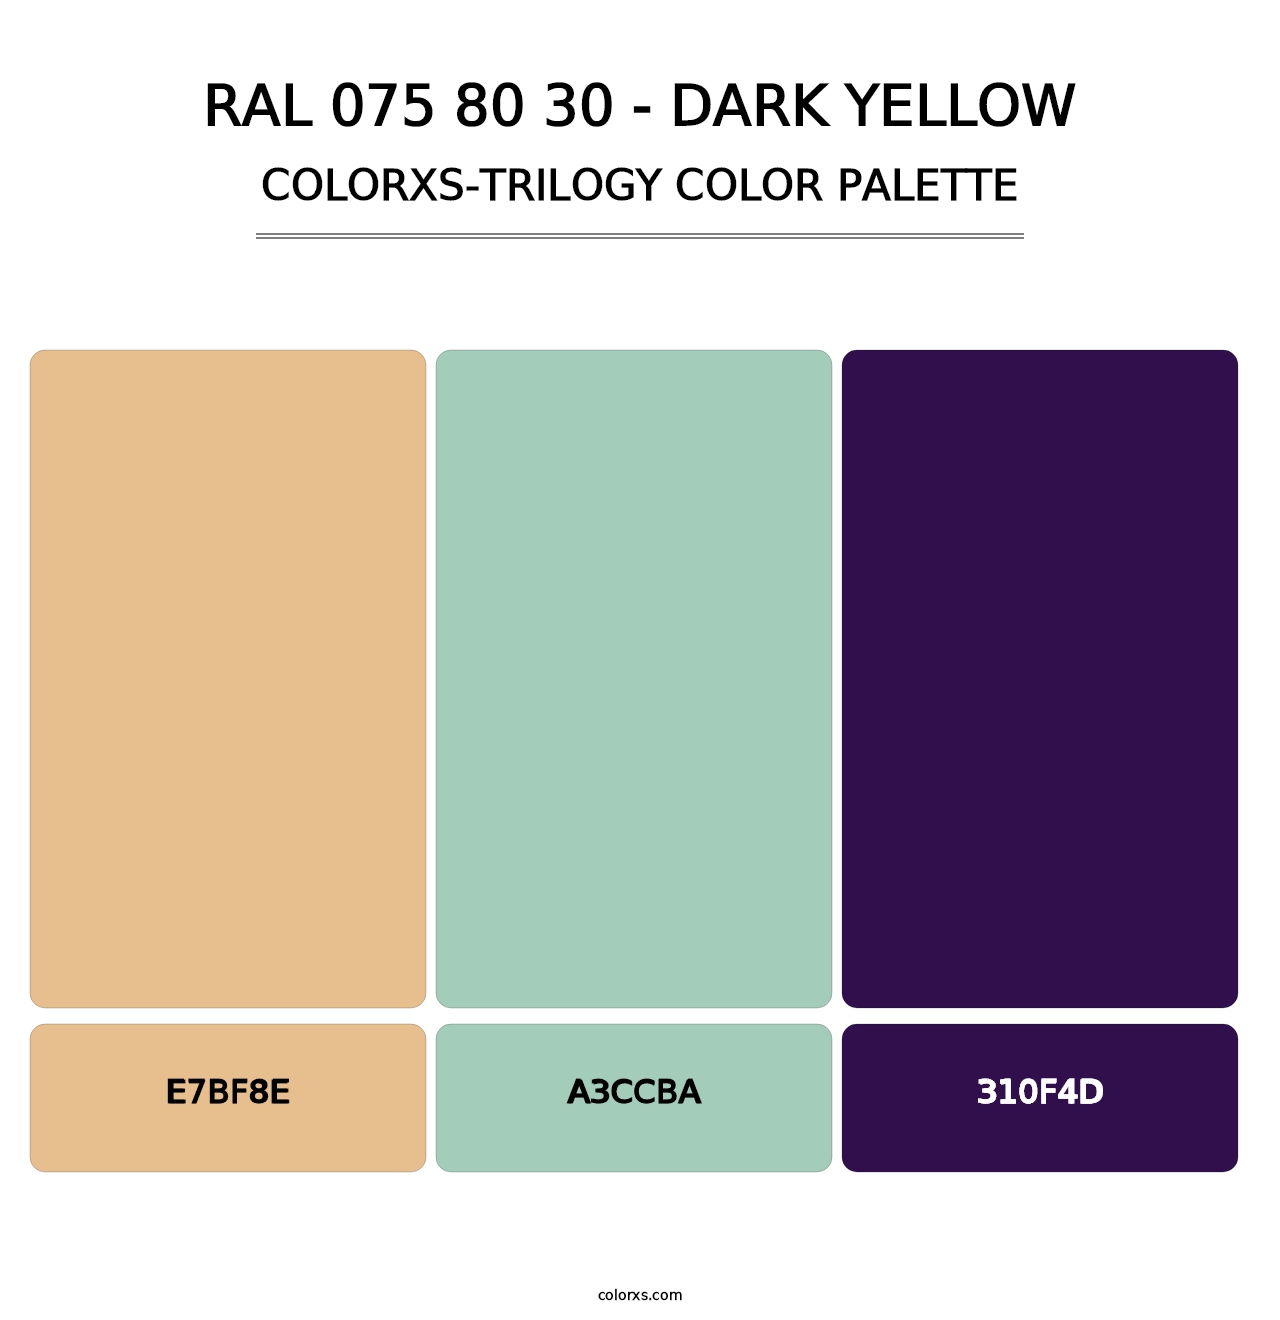 RAL 075 80 30 - Dark Yellow - Colorxs Trilogy Palette